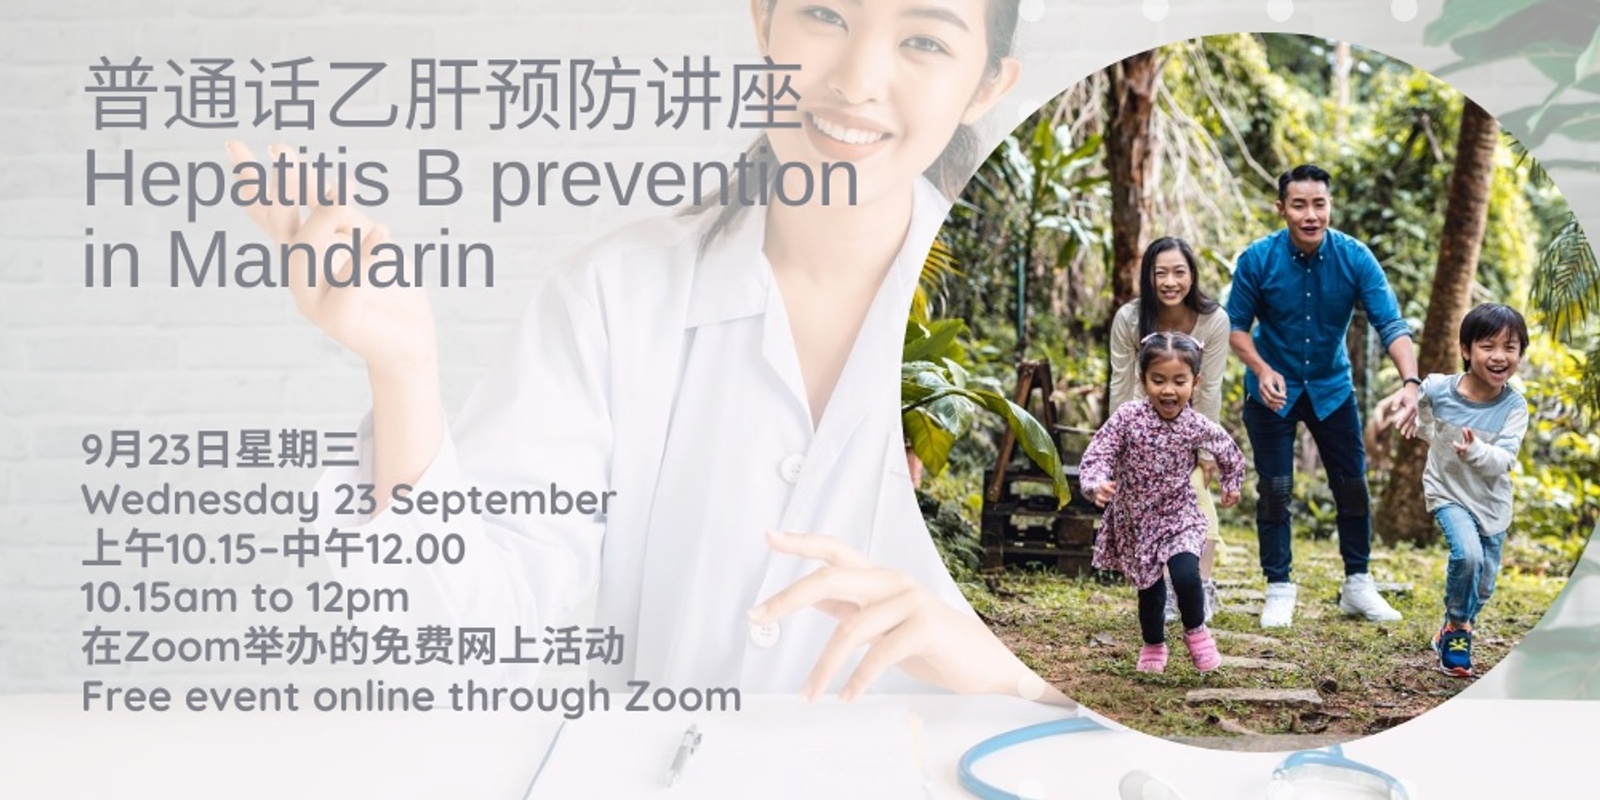 Banner image for 普通话乙肝预防讲座   Hepatitis B prevention in Mandarin